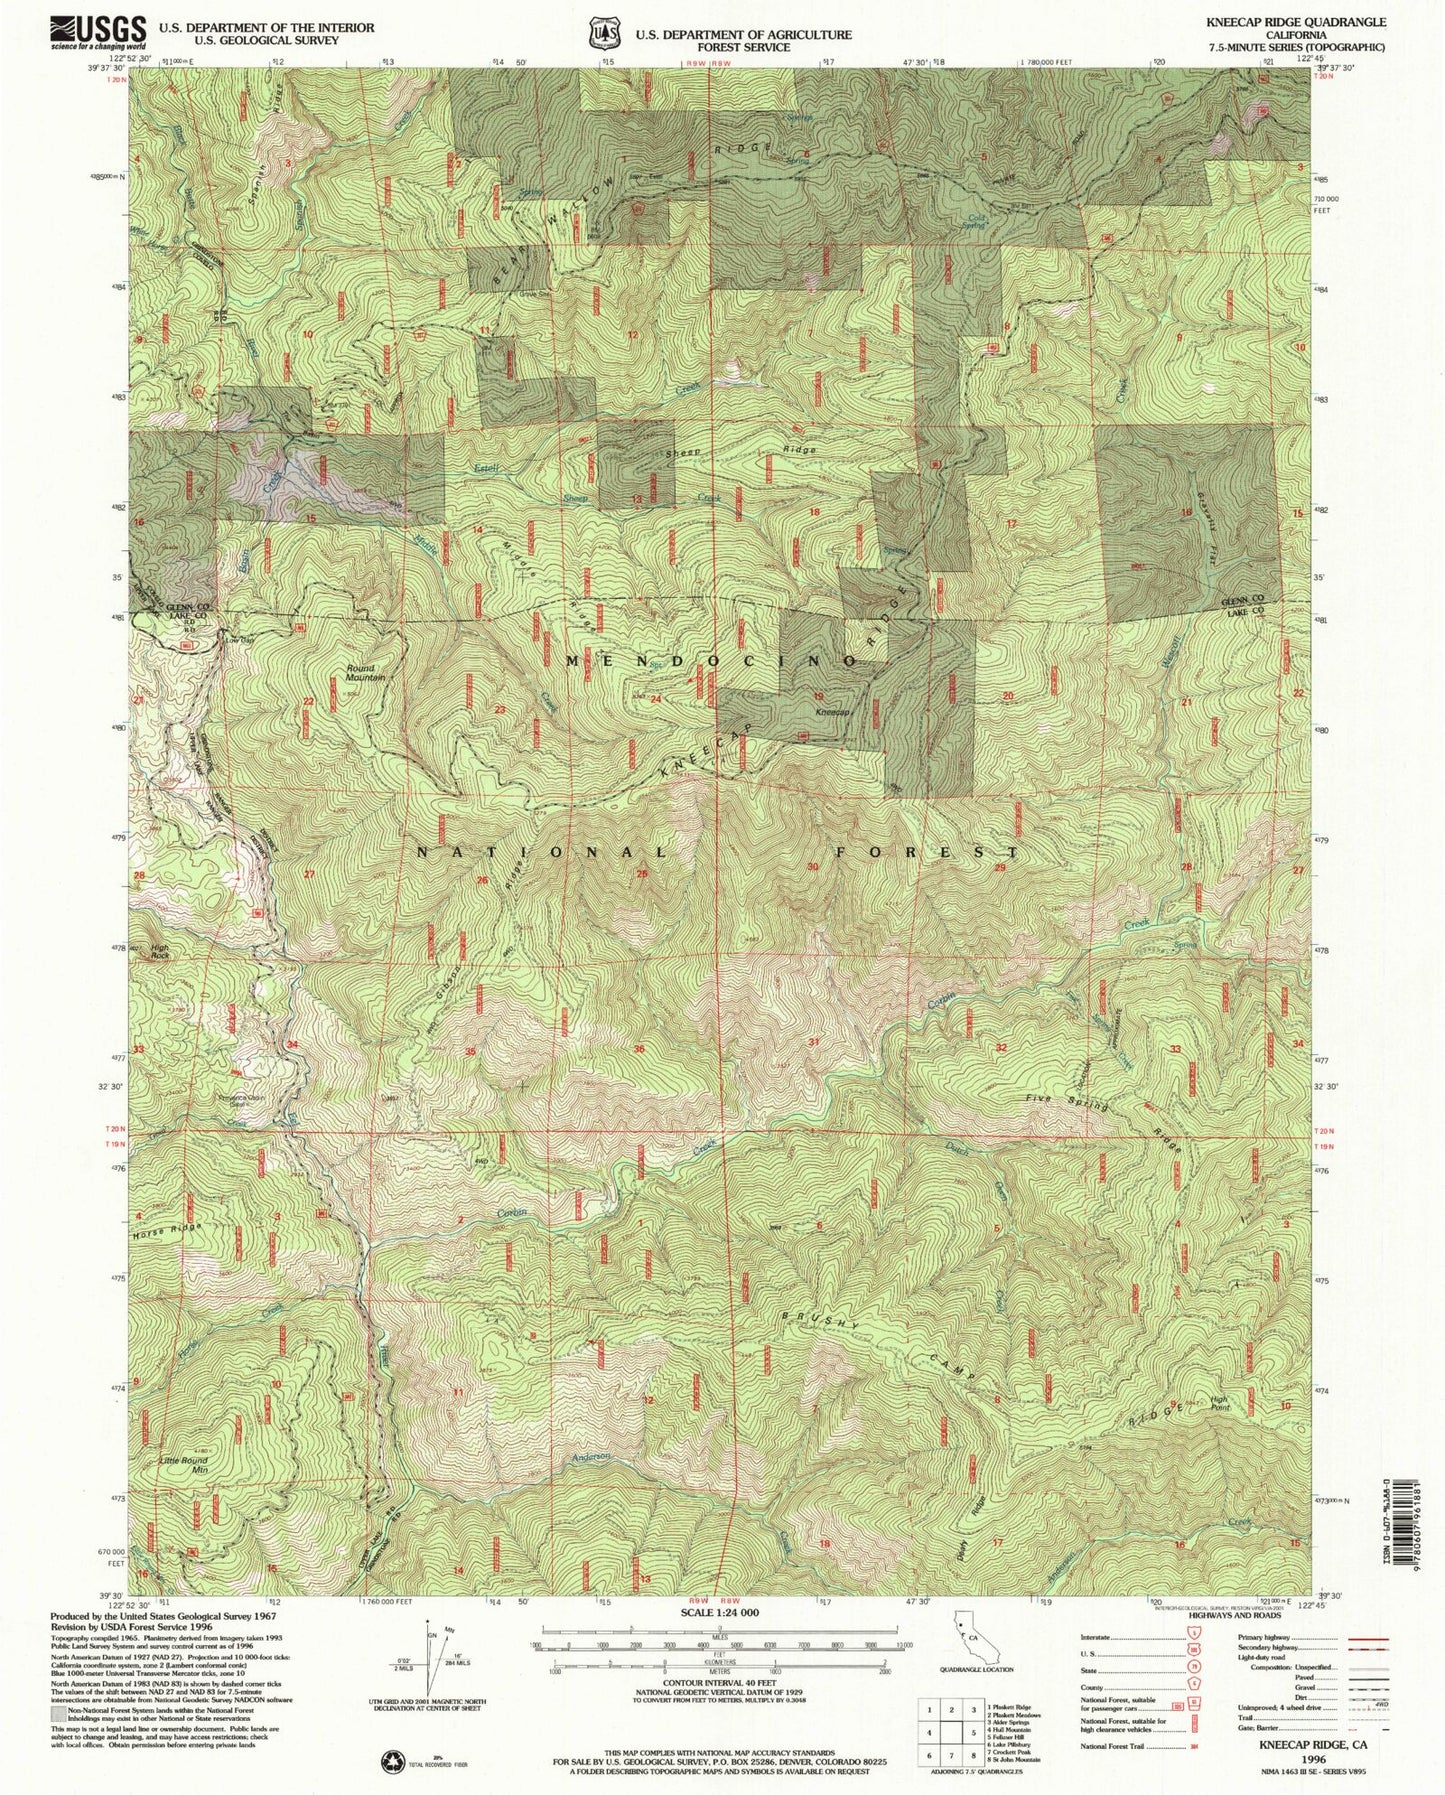 Classic USGS Kneecap Ridge California 7.5'x7.5' Topo Map Image